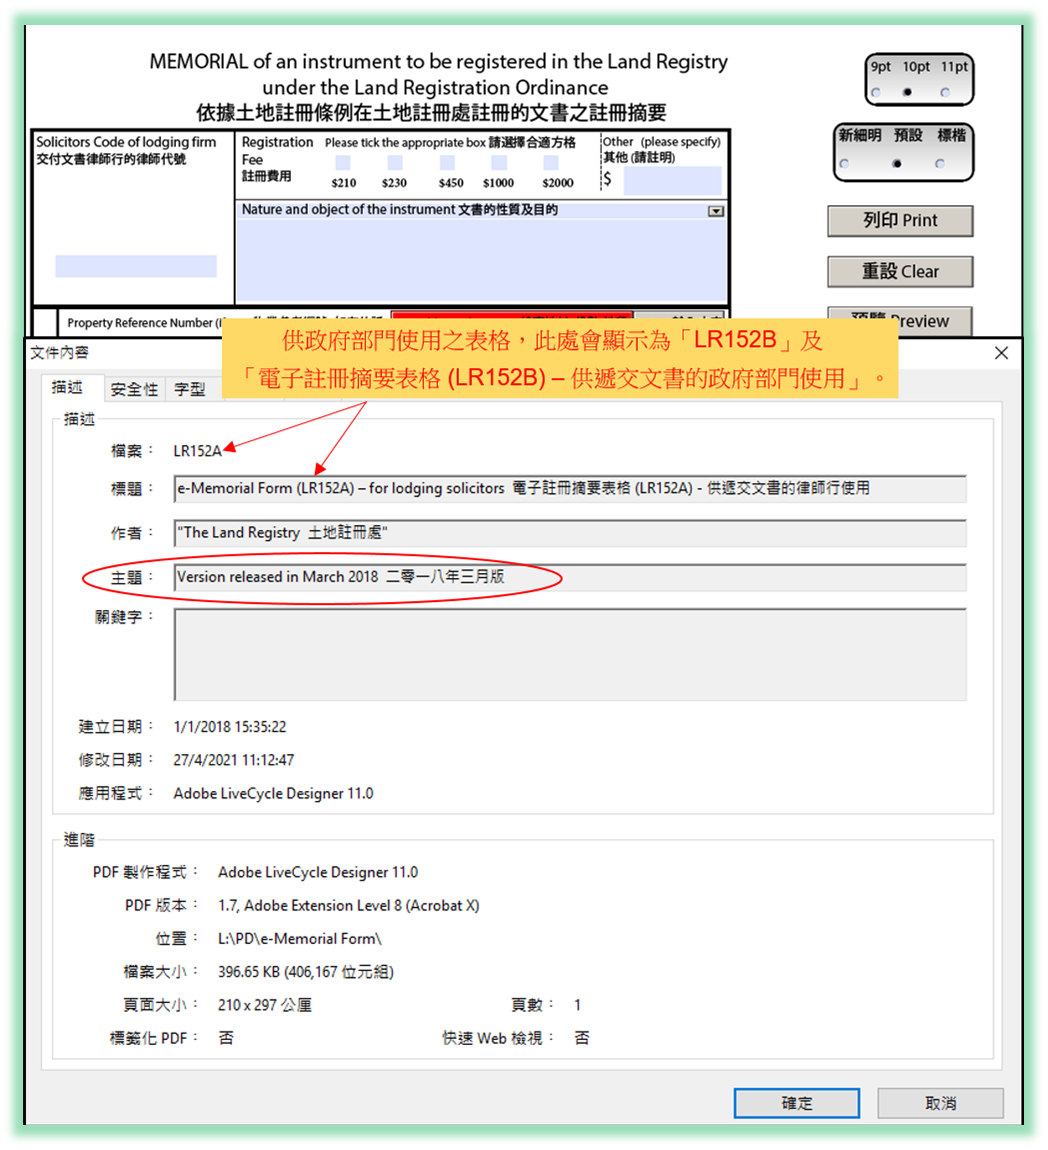 2009年版电子注册摘要表格的有效期届满_图 2